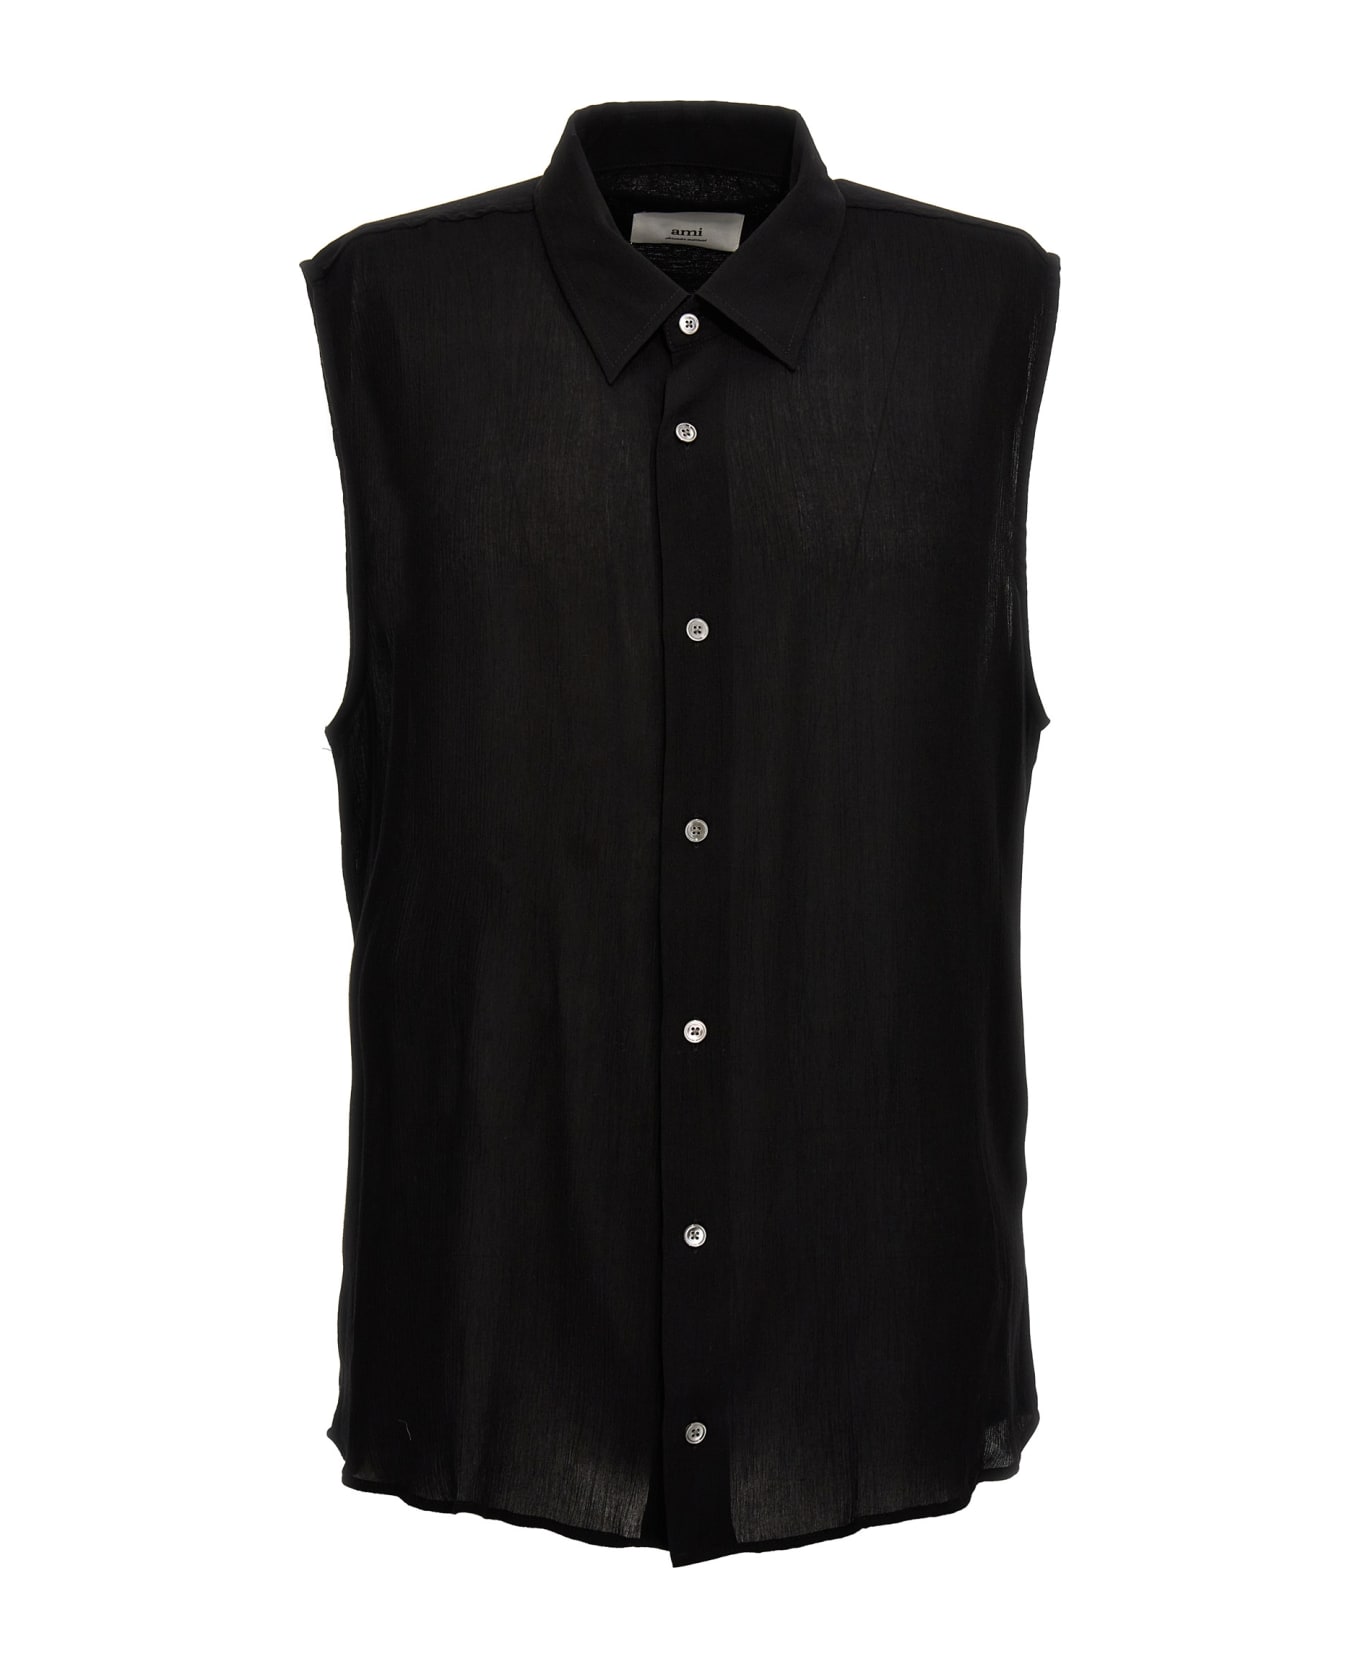 Ami Alexandre Mattiussi Sleeveless Shirt - Black   シャツ